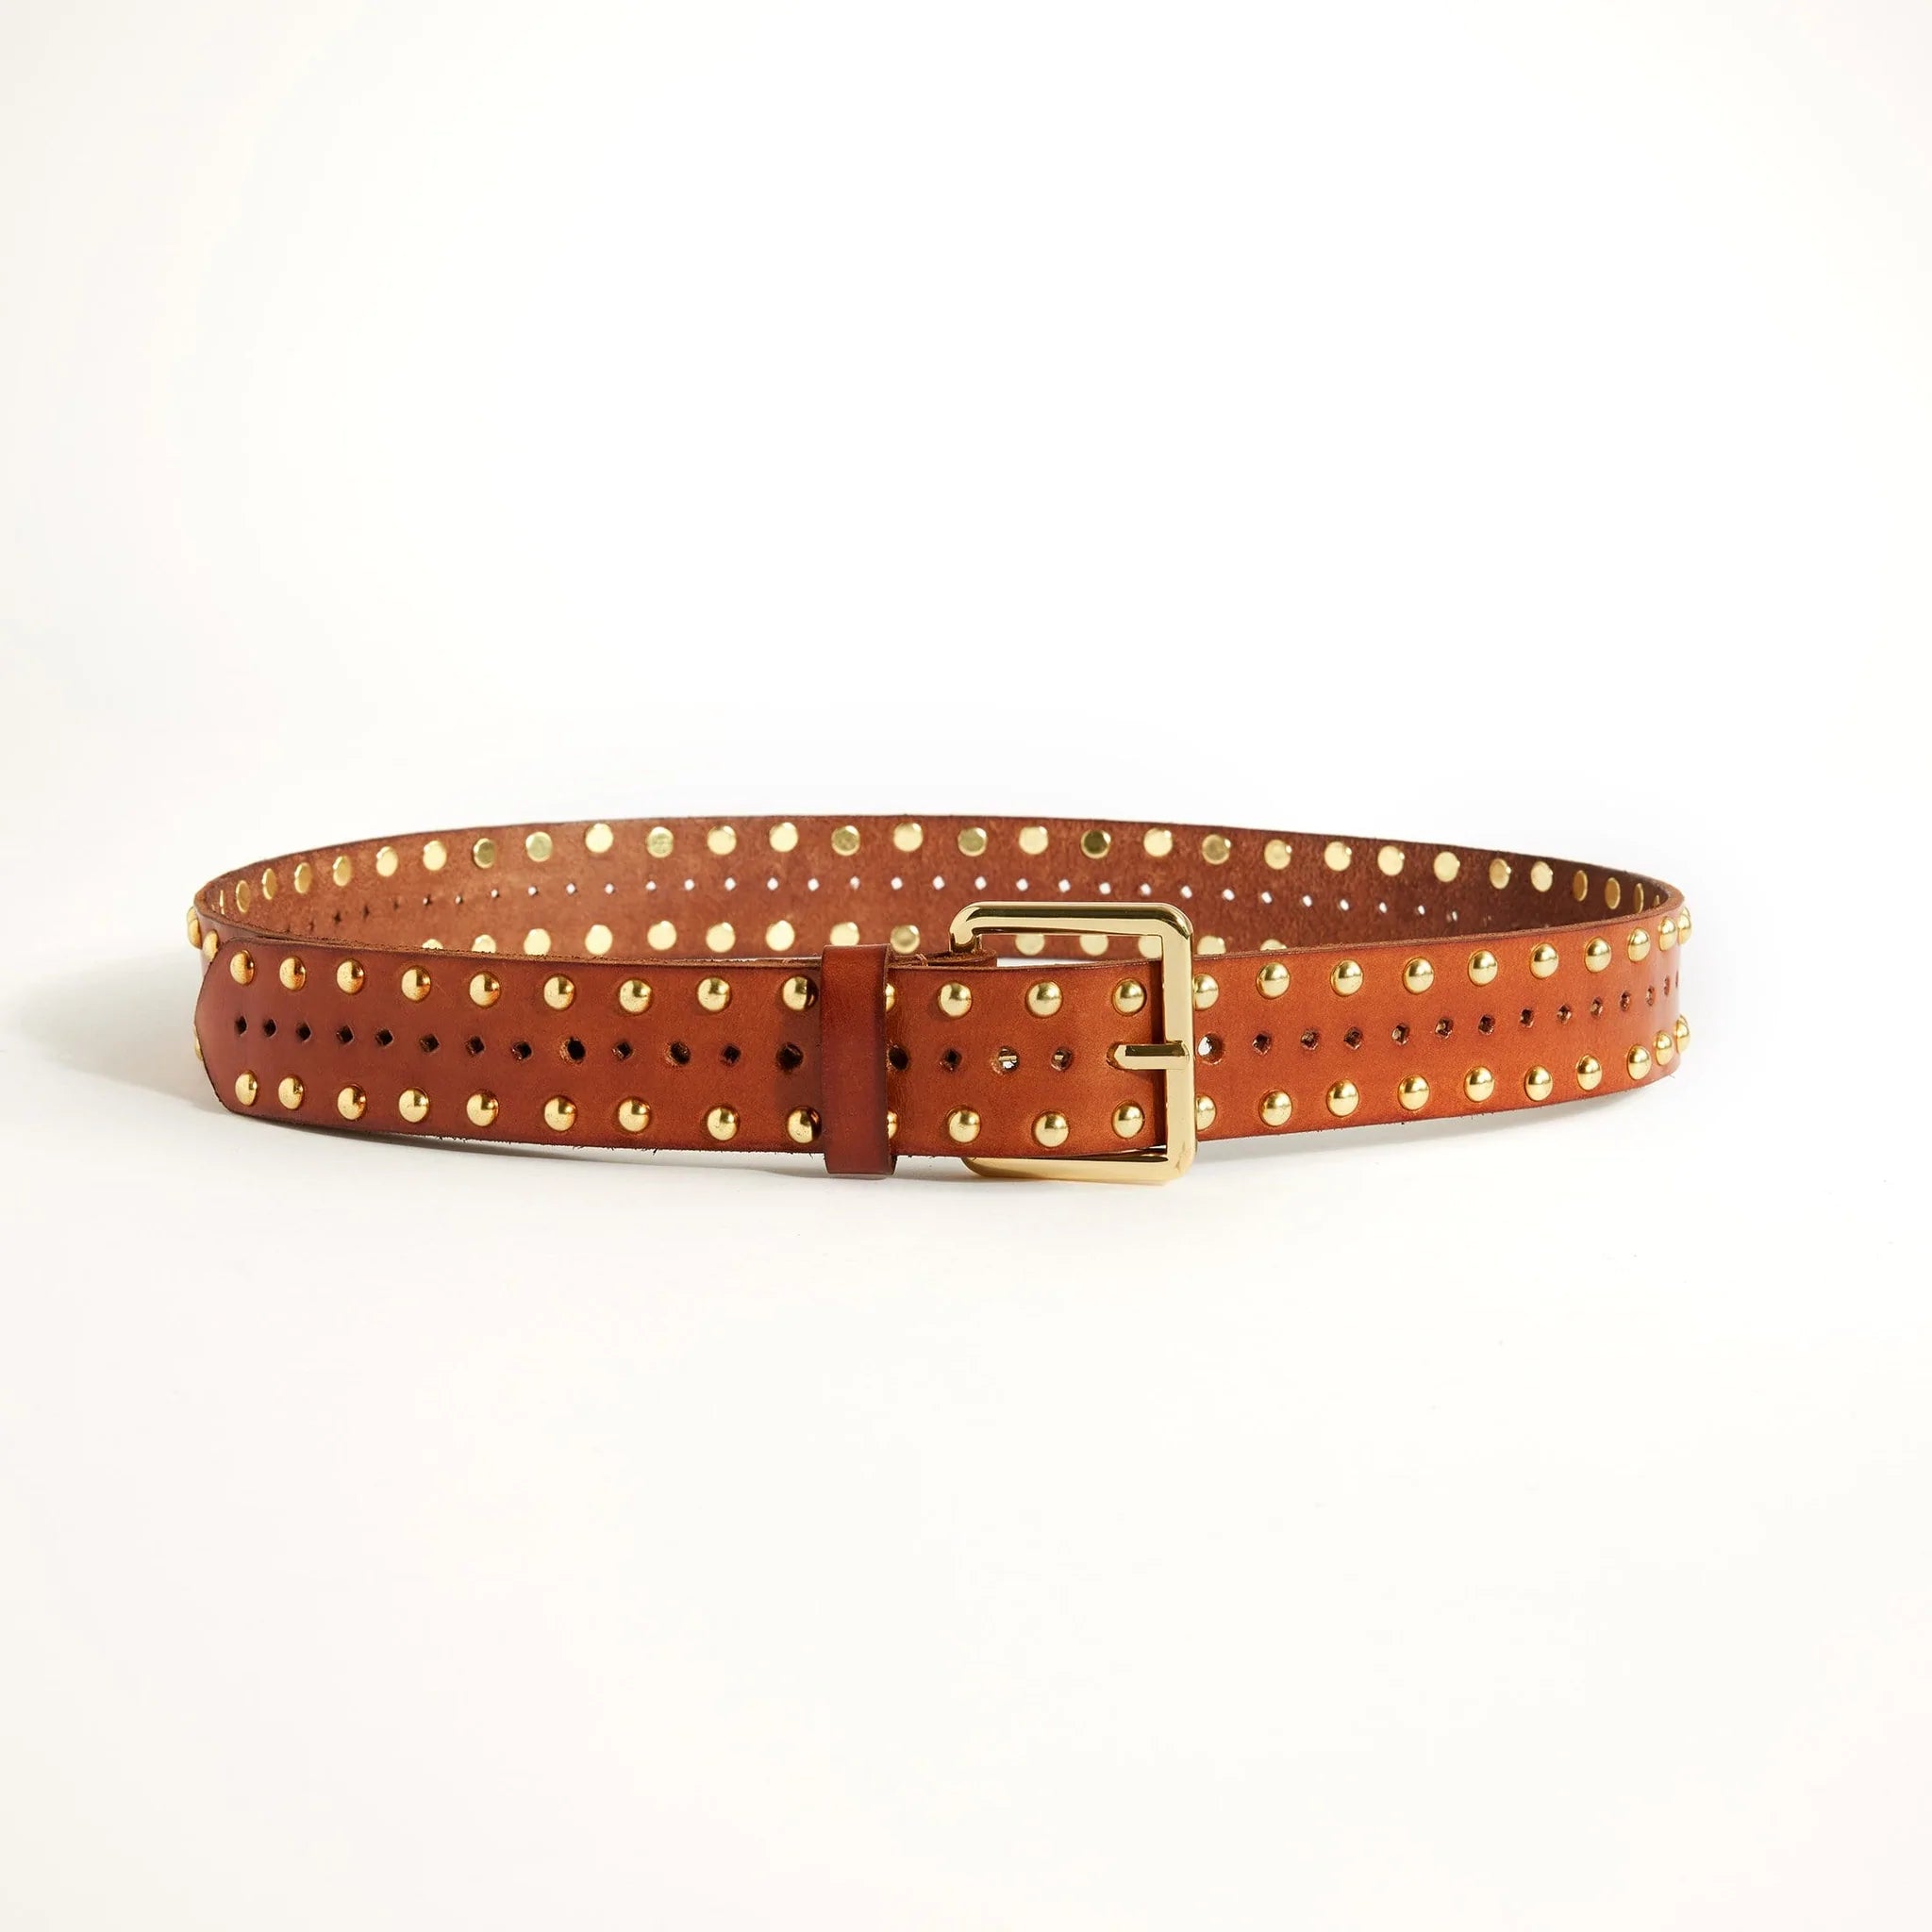 Shop Hollstar Sterling Leather Belt in Tan by Caravan & Co. - Caravan & Co